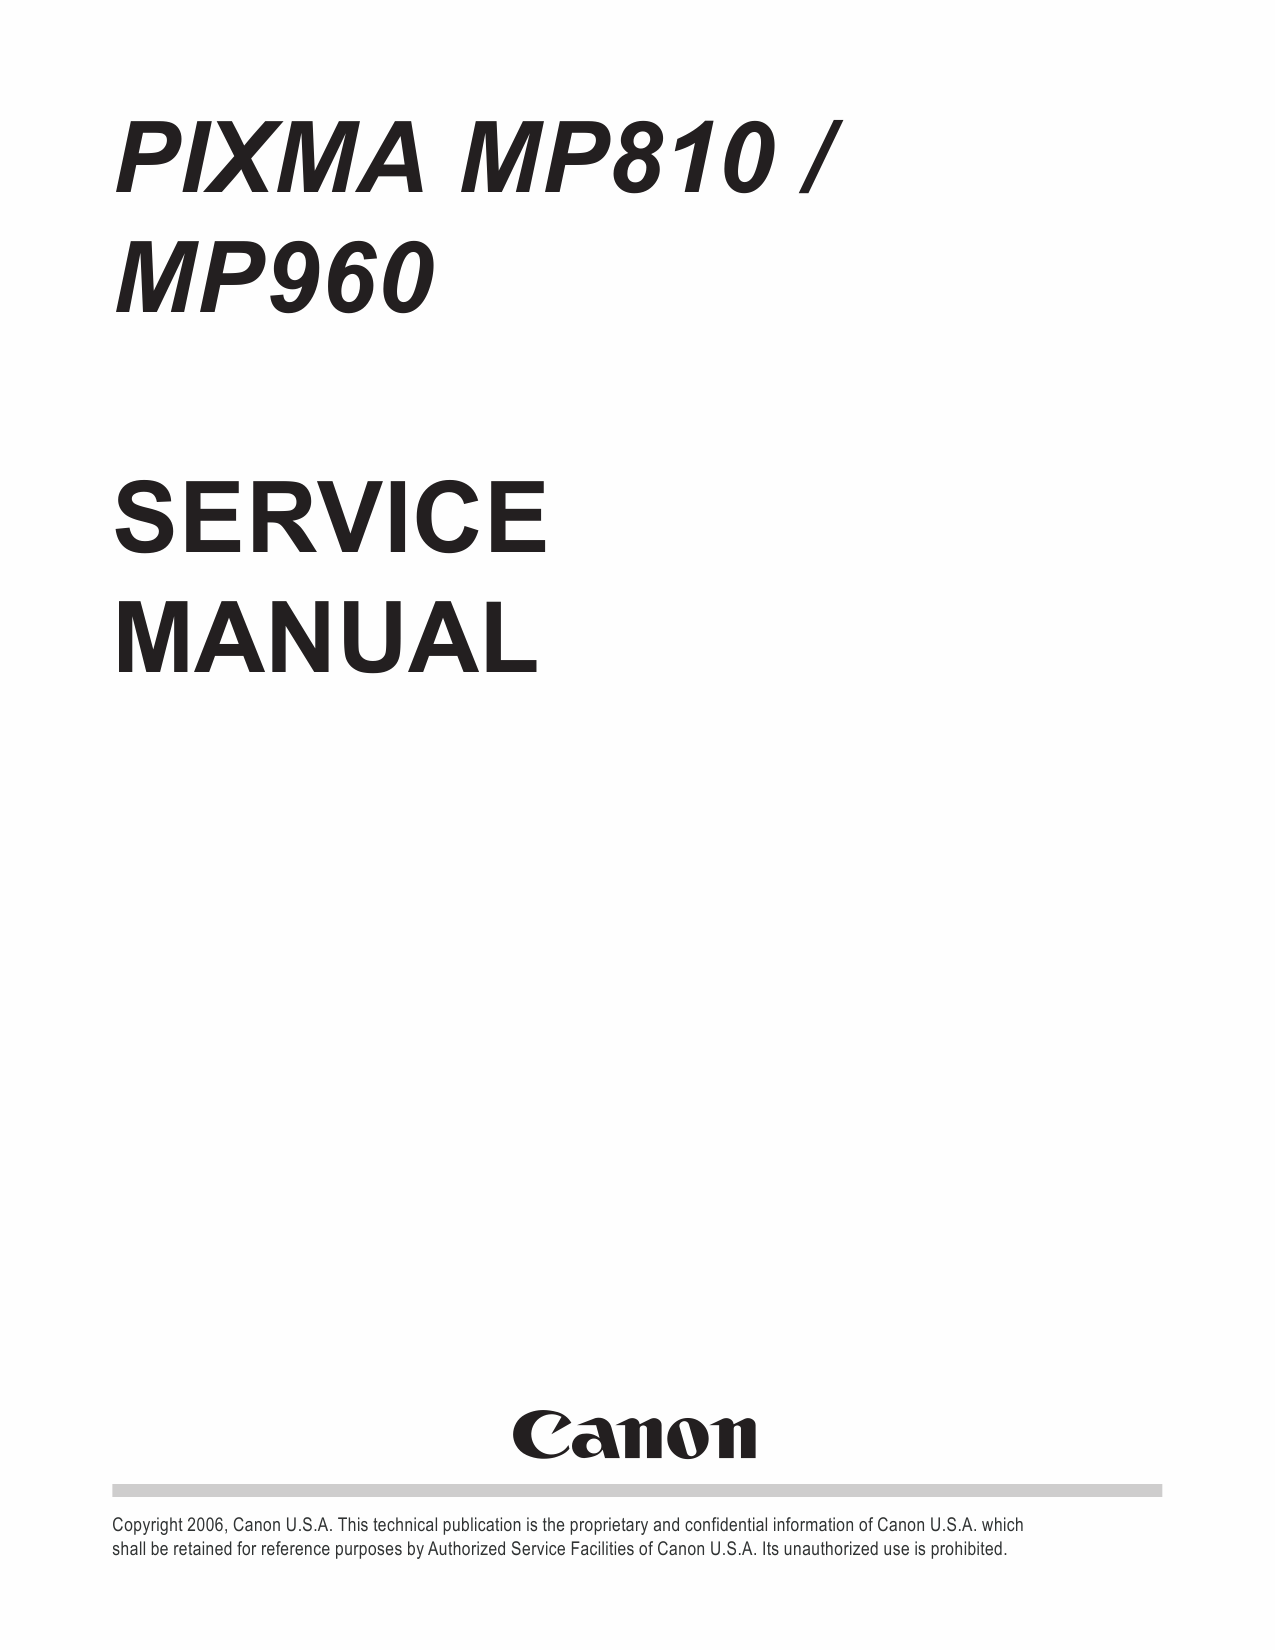 Canon PIXMA MP810 MP960 Service Manual-1